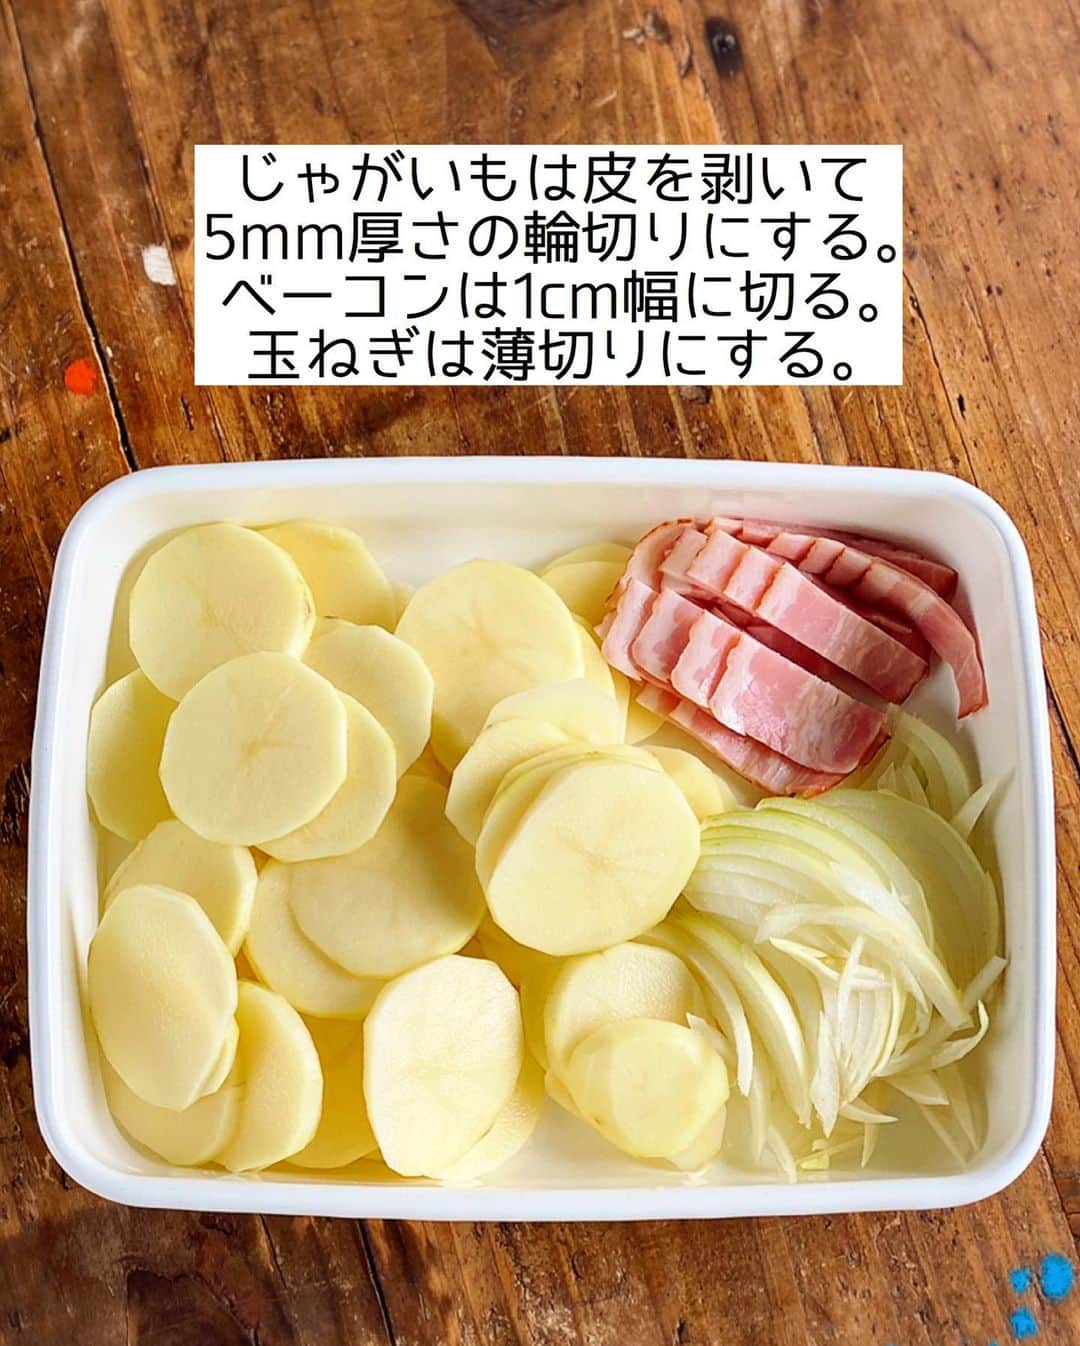 Mizuki【料理ブロガー・簡単レシピ】さんのインスタグラム写真 - (Mizuki【料理ブロガー・簡単レシピ】Instagram)「・﻿ 【#レシピ 】ーーーーーーーーーーー﻿ 煮込んで焼くだけ！ポテトグラタン﻿ ーーーーーーーーーーーーーーーーー﻿ ﻿ 　﻿ ﻿ おはようございます(*^^*)﻿ ﻿ 今日ご紹介させていただくのは﻿ 手間なくできる \ ポテトグラタン /﻿ ﻿ バター・ホワイトソースなし！﻿ しかも炒めない！！﻿ 牛乳で煮込んで焼くだけの﻿ 超簡単レシピです(*´艸`)﻿ ﻿ シンプルな手順と材料でできるので﻿ よかったらお試し下さいね(*^^*)﻿ ﻿ ﻿ ﻿ ＿＿＿＿＿＿＿＿＿＿＿＿＿＿＿＿＿＿＿＿﻿ 【2〜3人分】﻿ じゃがいも...3個(350g)﻿ ベーコン...2枚﻿ 玉ねぎ...1/4個﻿ ●牛乳...300ml﻿ ●コンソメ...小1/2﻿ ●塩こしょう...少々﻿ ピザ用チーズ...60g﻿ パセリ(みじん切り)...適量﻿ ﻿ 1.じゃがいもは皮を剥いて5mm厚さの輪切りにする。ベーコンは1cm幅に切る。玉ねぎは薄切りにする。﻿ 2.鍋に●を入れて中火にかける。煮立ったら1を加え、たまに混ぜながら10分程煮る。﻿ 3.じゃがいもが柔らかくなったら耐熱皿に入れ、チーズをのせてトースターで焼く。仕上げにパセリを振る。﻿ ￣￣￣￣￣￣￣￣￣￣￣￣￣￣￣￣￣￣￣￣﻿ ﻿ ﻿ ﻿ 《ポイント》﻿ ♦︎直径20cmの鍋を使用しています♩﻿ ♦︎煮ている時、じゃがいもが鍋底にくっつきやすいので(特に後半は)混ぜながら煮込んで下さい♩焦げ付きそうな場合は火加減を落として下さい☆﻿ ﻿ 　﻿ ﻿ ﻿ ﻿ ﻿ 💬💬💬＿＿＿＿＿＿＿＿＿＿＿＿＿＿＿﻿ ホットケーキミックスで作る﻿ 《バナナパウンドケーキ》の作り方動画を﻿ YouTubeにアップしました☺️﻿ 混ぜて焼くだけどしっとり仕上がる﻿ おすすめレシピです💗﻿ よかったらお試し下さいね🥰﻿ ↓﻿ 【YouTube】🔍奇跡のキッチン🔍﻿ (ストーリー・ハイライトからも飛べます✨)﻿ ＿＿＿＿＿＿＿＿＿＿＿＿＿＿＿＿＿＿＿＿﻿ ﻿ ﻿ ﻿ ﻿ ﻿ ﻿ ﻿ ⭐️発売中⭐️﻿ ＿＿＿＿＿＿＿＿＿＿＿＿＿＿＿＿＿＿﻿ ホケミレシピの決定版♩﻿ \はじめてでも失敗しない/﻿ 📙#ホットケーキミックスのお菓子 📙﻿ ﻿ NHKまる得マガジンテキスト☆﻿ ホットケーキミックスで﻿ 📗絶品おやつ&意外なランチ📗﻿ ﻿ しんどくない献立、考えました♩﻿ \15分でいただきます/﻿ 📕#Mizukiの2品献立 📕﻿ ﻿ 和食をもっとカジュアルに♩﻿ \毎日のごはんがラクになる/﻿ 📘Mizukiの今どき和食 📘﻿ ﻿ 重版しました！﻿ ありがとうございます😭﻿ 📗ラクしておいしい！#1品晩ごはん 📗﻿ ﻿ 摂食障害から料理研究家になるまでを綴った﻿ はじめてのエッセイ本﻿ 📙#普通のおいしいをつくるひと 📙﻿ ￣￣￣￣￣￣￣￣￣￣￣￣￣￣￣￣￣￣￣﻿ ﻿ ﻿ ﻿ ﻿ ﻿ ＿＿＿＿＿＿＿＿＿＿＿＿＿＿＿＿＿＿﻿ レシピを作って下さった際や﻿ レシピ本についてのご投稿には﻿ タグ付け( @mizuki_31cafe )して﻿ お知らせいただけると嬉しいです😊💕﻿ ￣￣￣￣￣￣￣￣￣￣￣￣￣￣￣￣￣￣﻿ ﻿ ﻿ ﻿ ﻿ ﻿ #ポテトグラタン#じゃがいも#牛乳#グラタン#バターなし#Mizuki#簡単レシピ#時短レシピ#節約レシピ#料理#フーディーテーブル#マカロニメイト#おうちごはん#デリスタグラマー#料理好きな人と繋がりたい#おうちごはんlover#写真好きな人と繋がりたい#foodpic#cooking#recipe#lin_stagrammer#foodporn#yummy#f52grams#ポテトグラタンm」2月18日 7時14分 - mizuki_31cafe